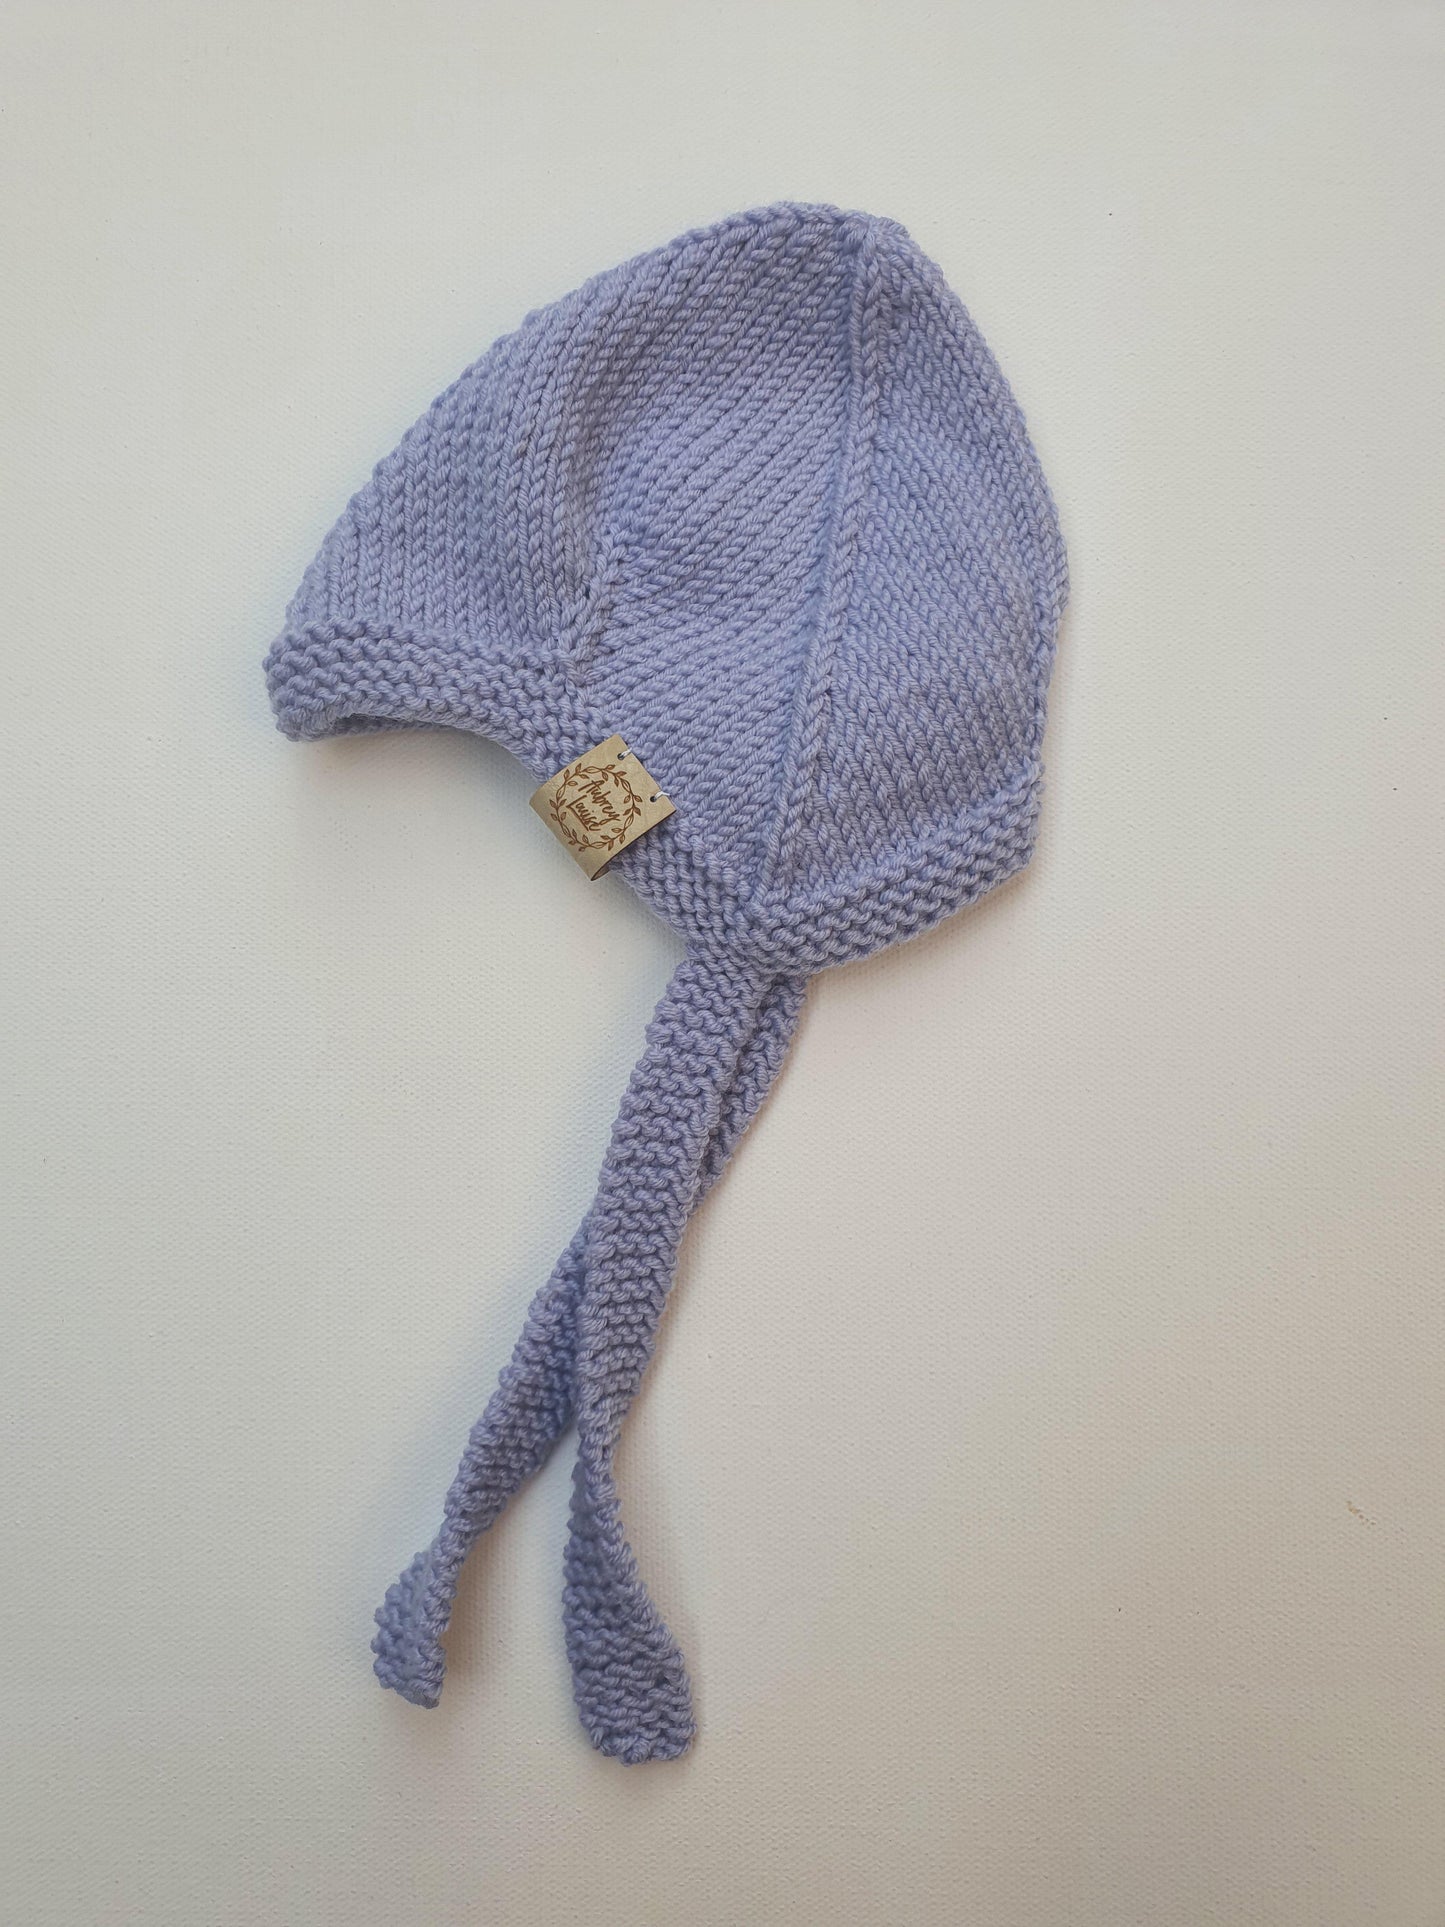 Jacks Hat 0-3 months Merino Hat - In Stock Aubrey Louise 